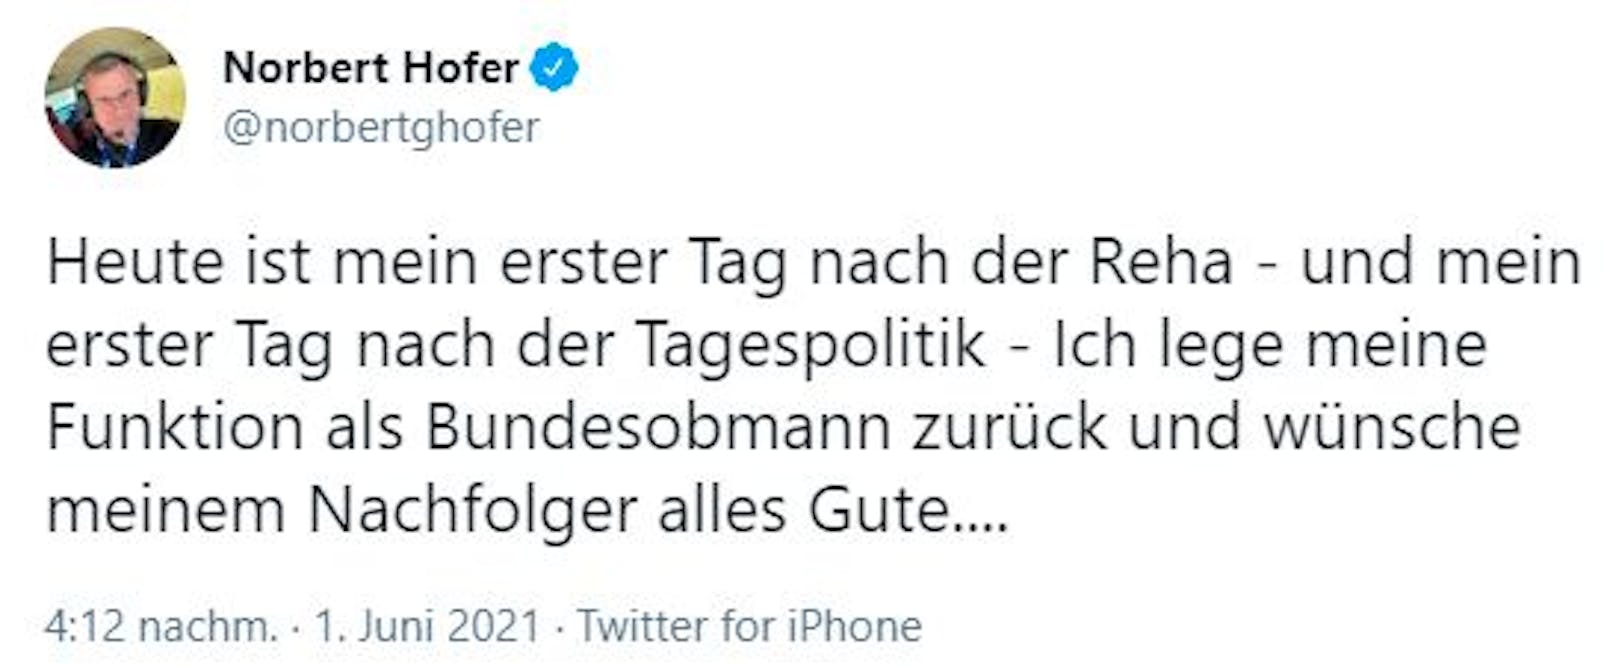 Norbert Hofer Rücktritt Tweet